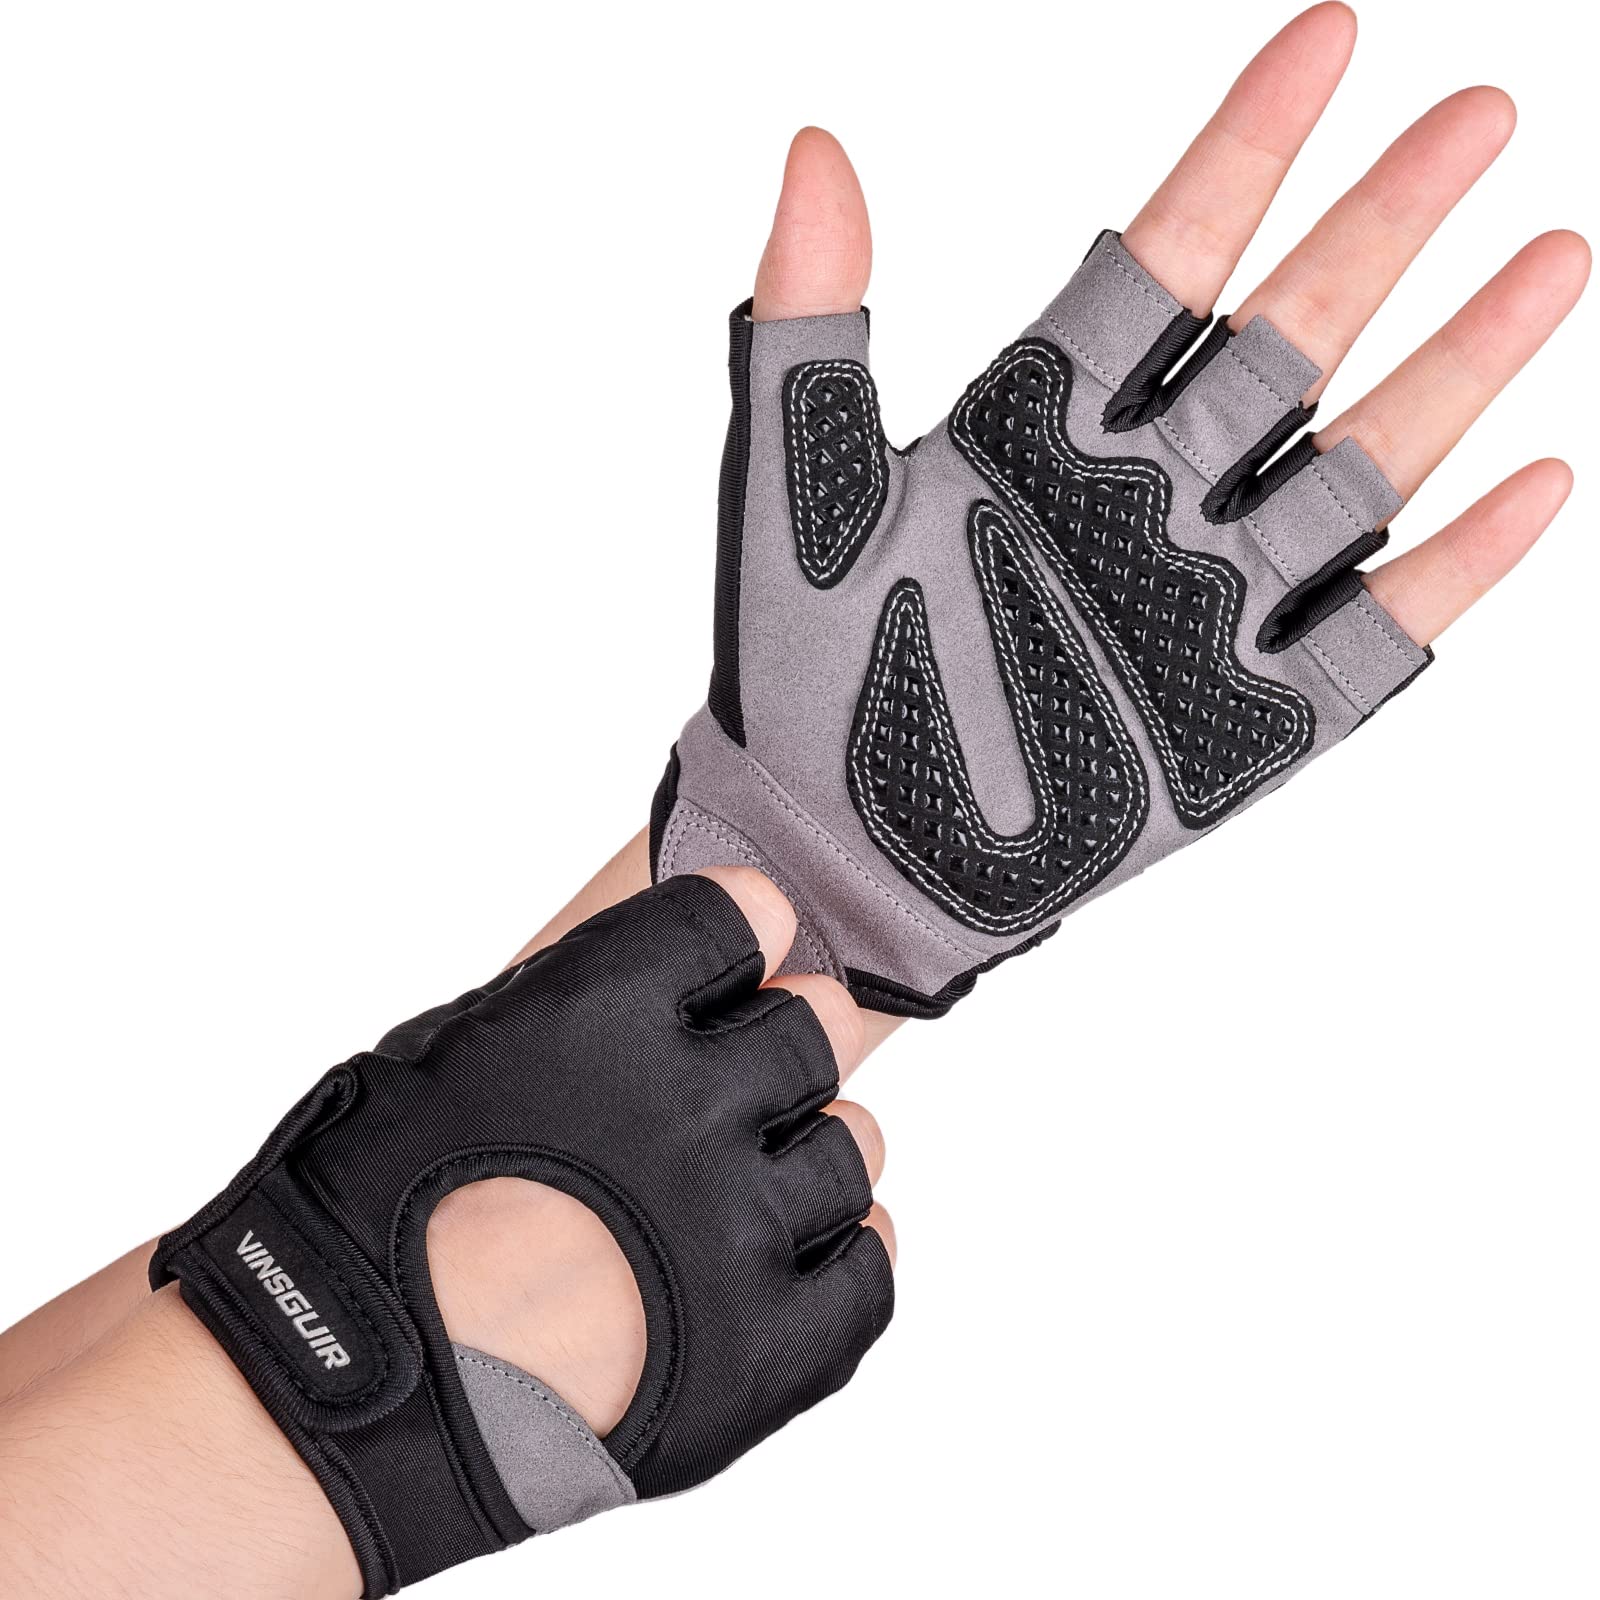 Gym Gloves for Women, Workout Gloves Women, Fingerless Gloves for